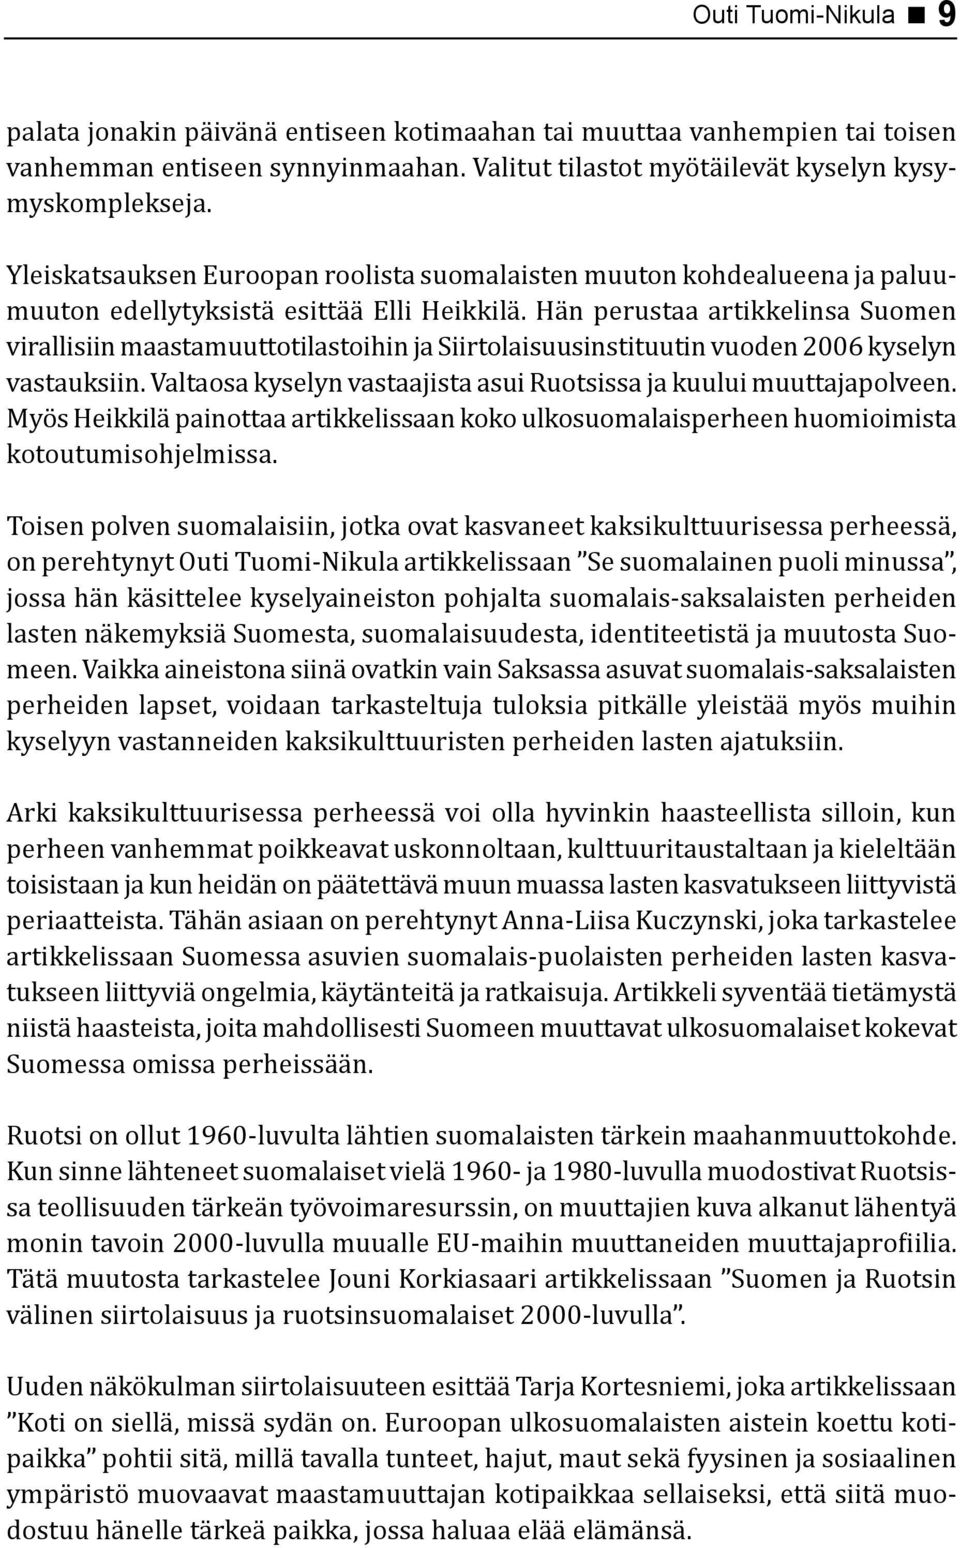 Hän perustaa artikkelinsa Suomen virallisiin maastamuuttotilastoihin ja Siirtolaisuusinstituutin vuoden 2006 kyselyn vastauksiin. Valtaosa kyselyn vastaajista asui Ruotsissa ja kuului muuttajapolveen.